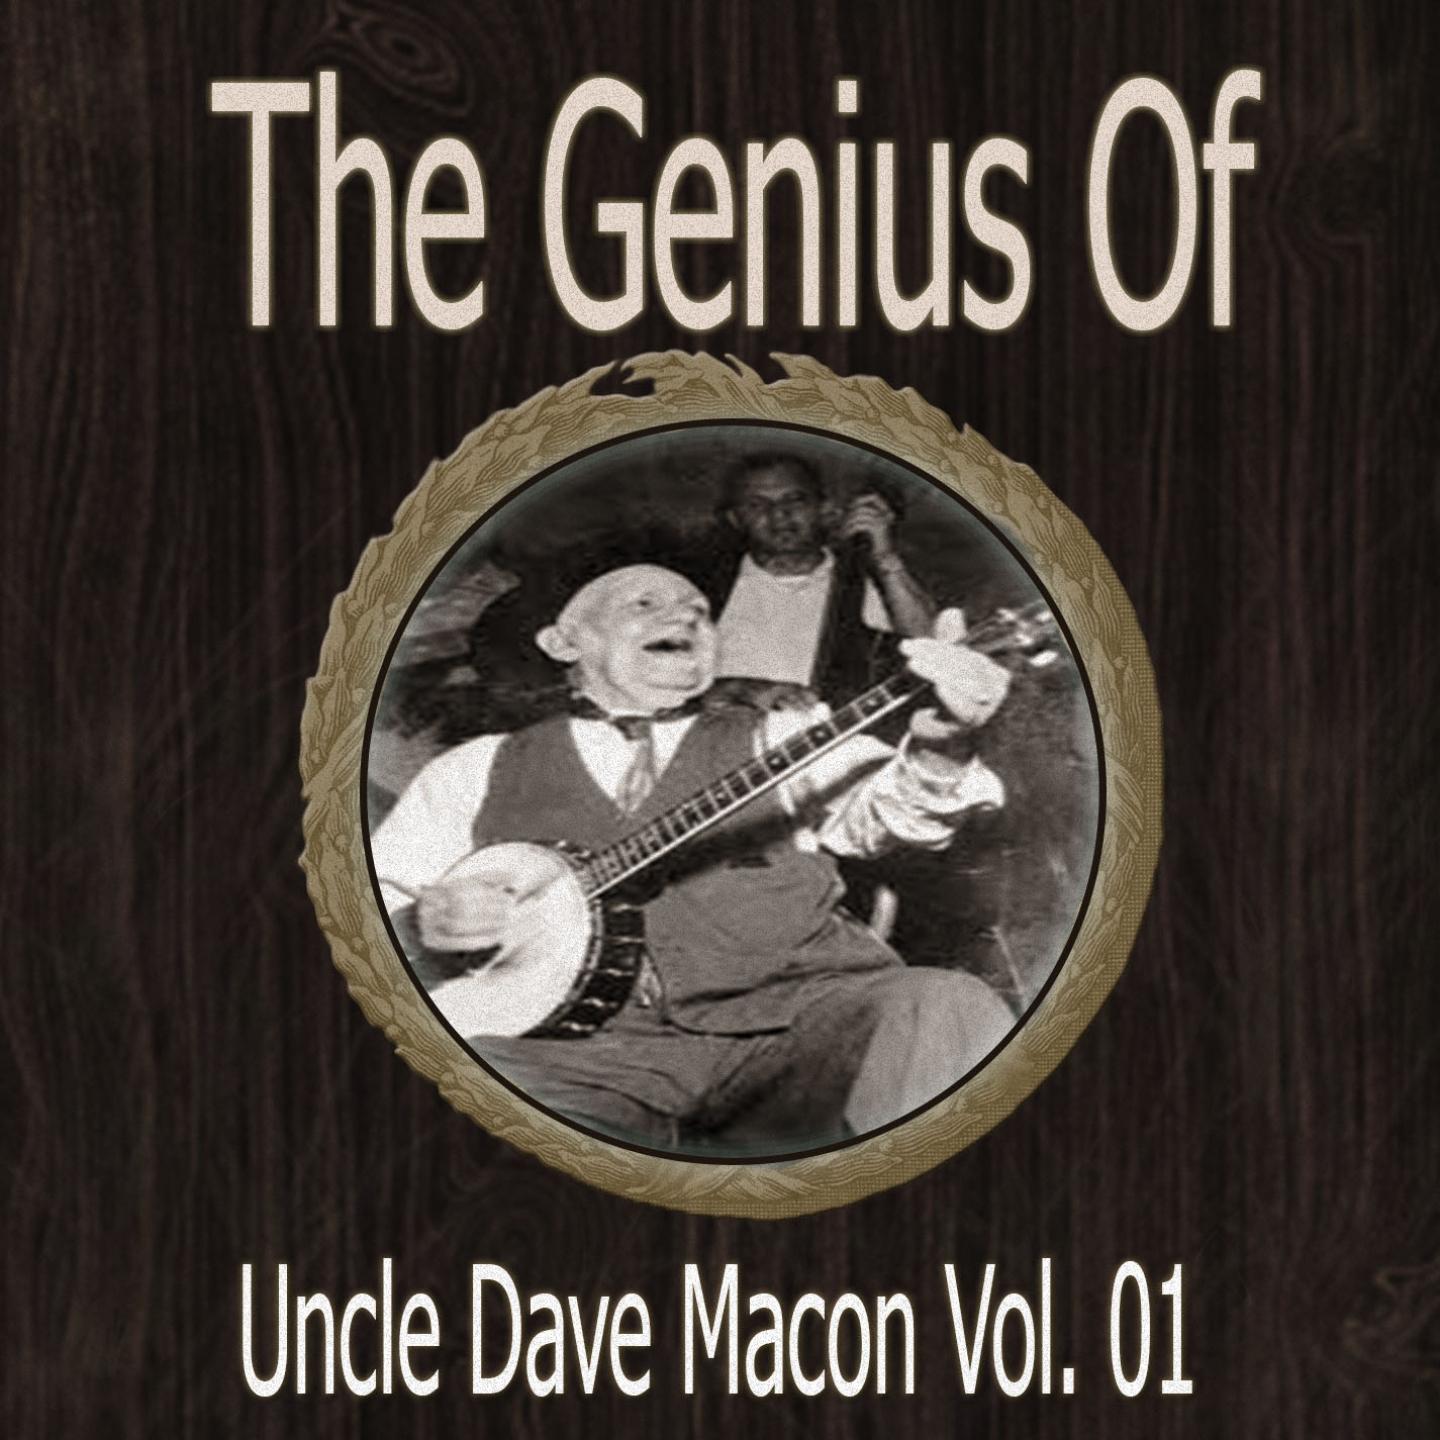 The Genius of Uncle Dave Macon Vol 01